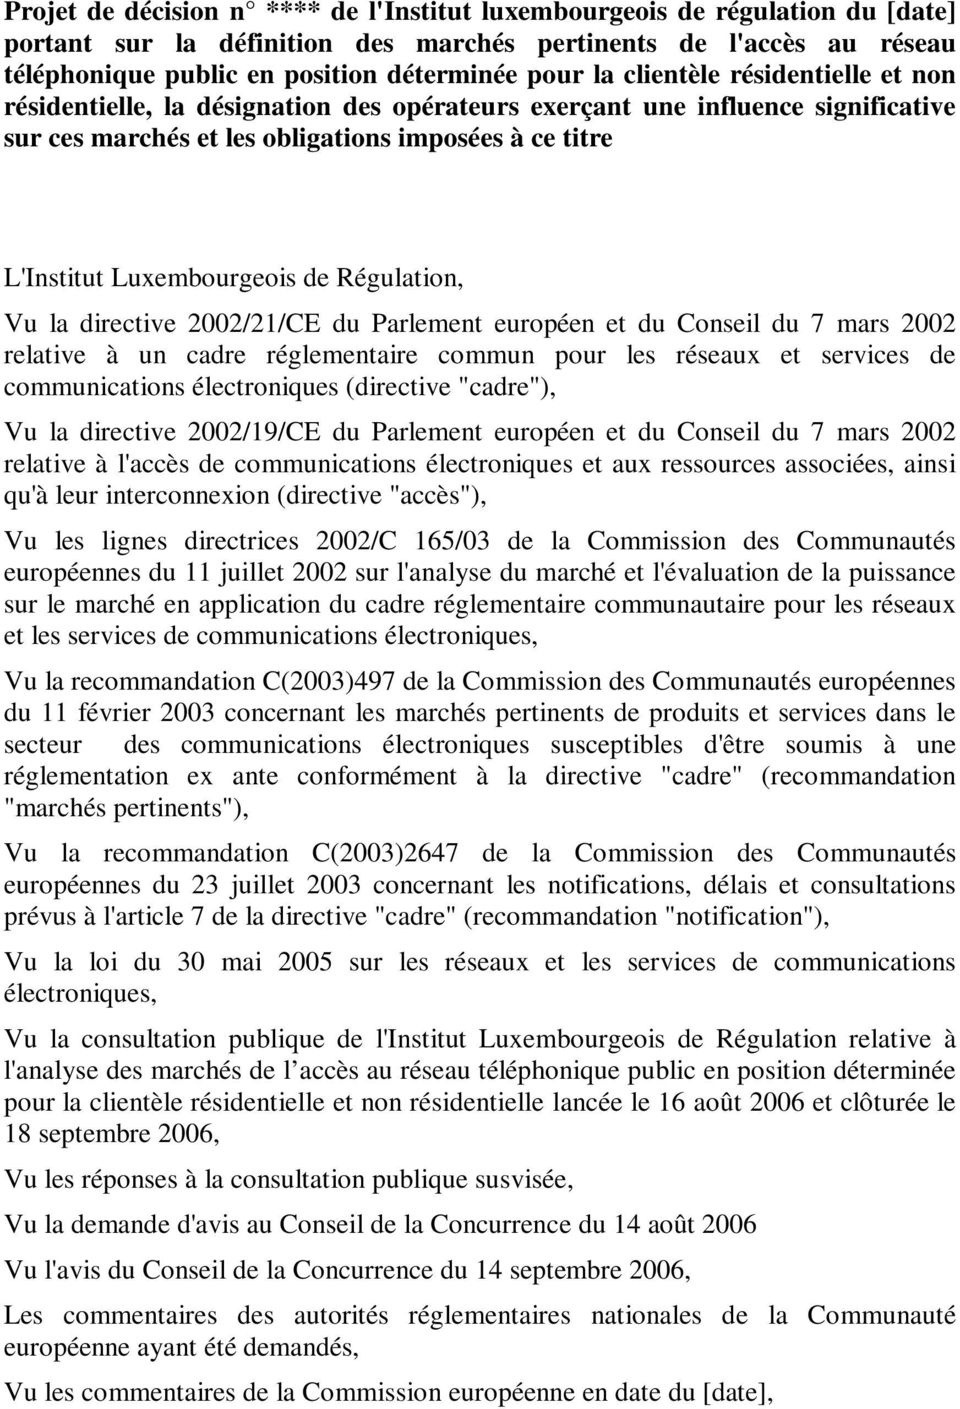 Régulation, Vu la directive 2002/21/CE du Parlement européen et du Conseil du 7 mars 2002 relative à un cadre réglementaire commun pour les réseaux et services de communications électroniques